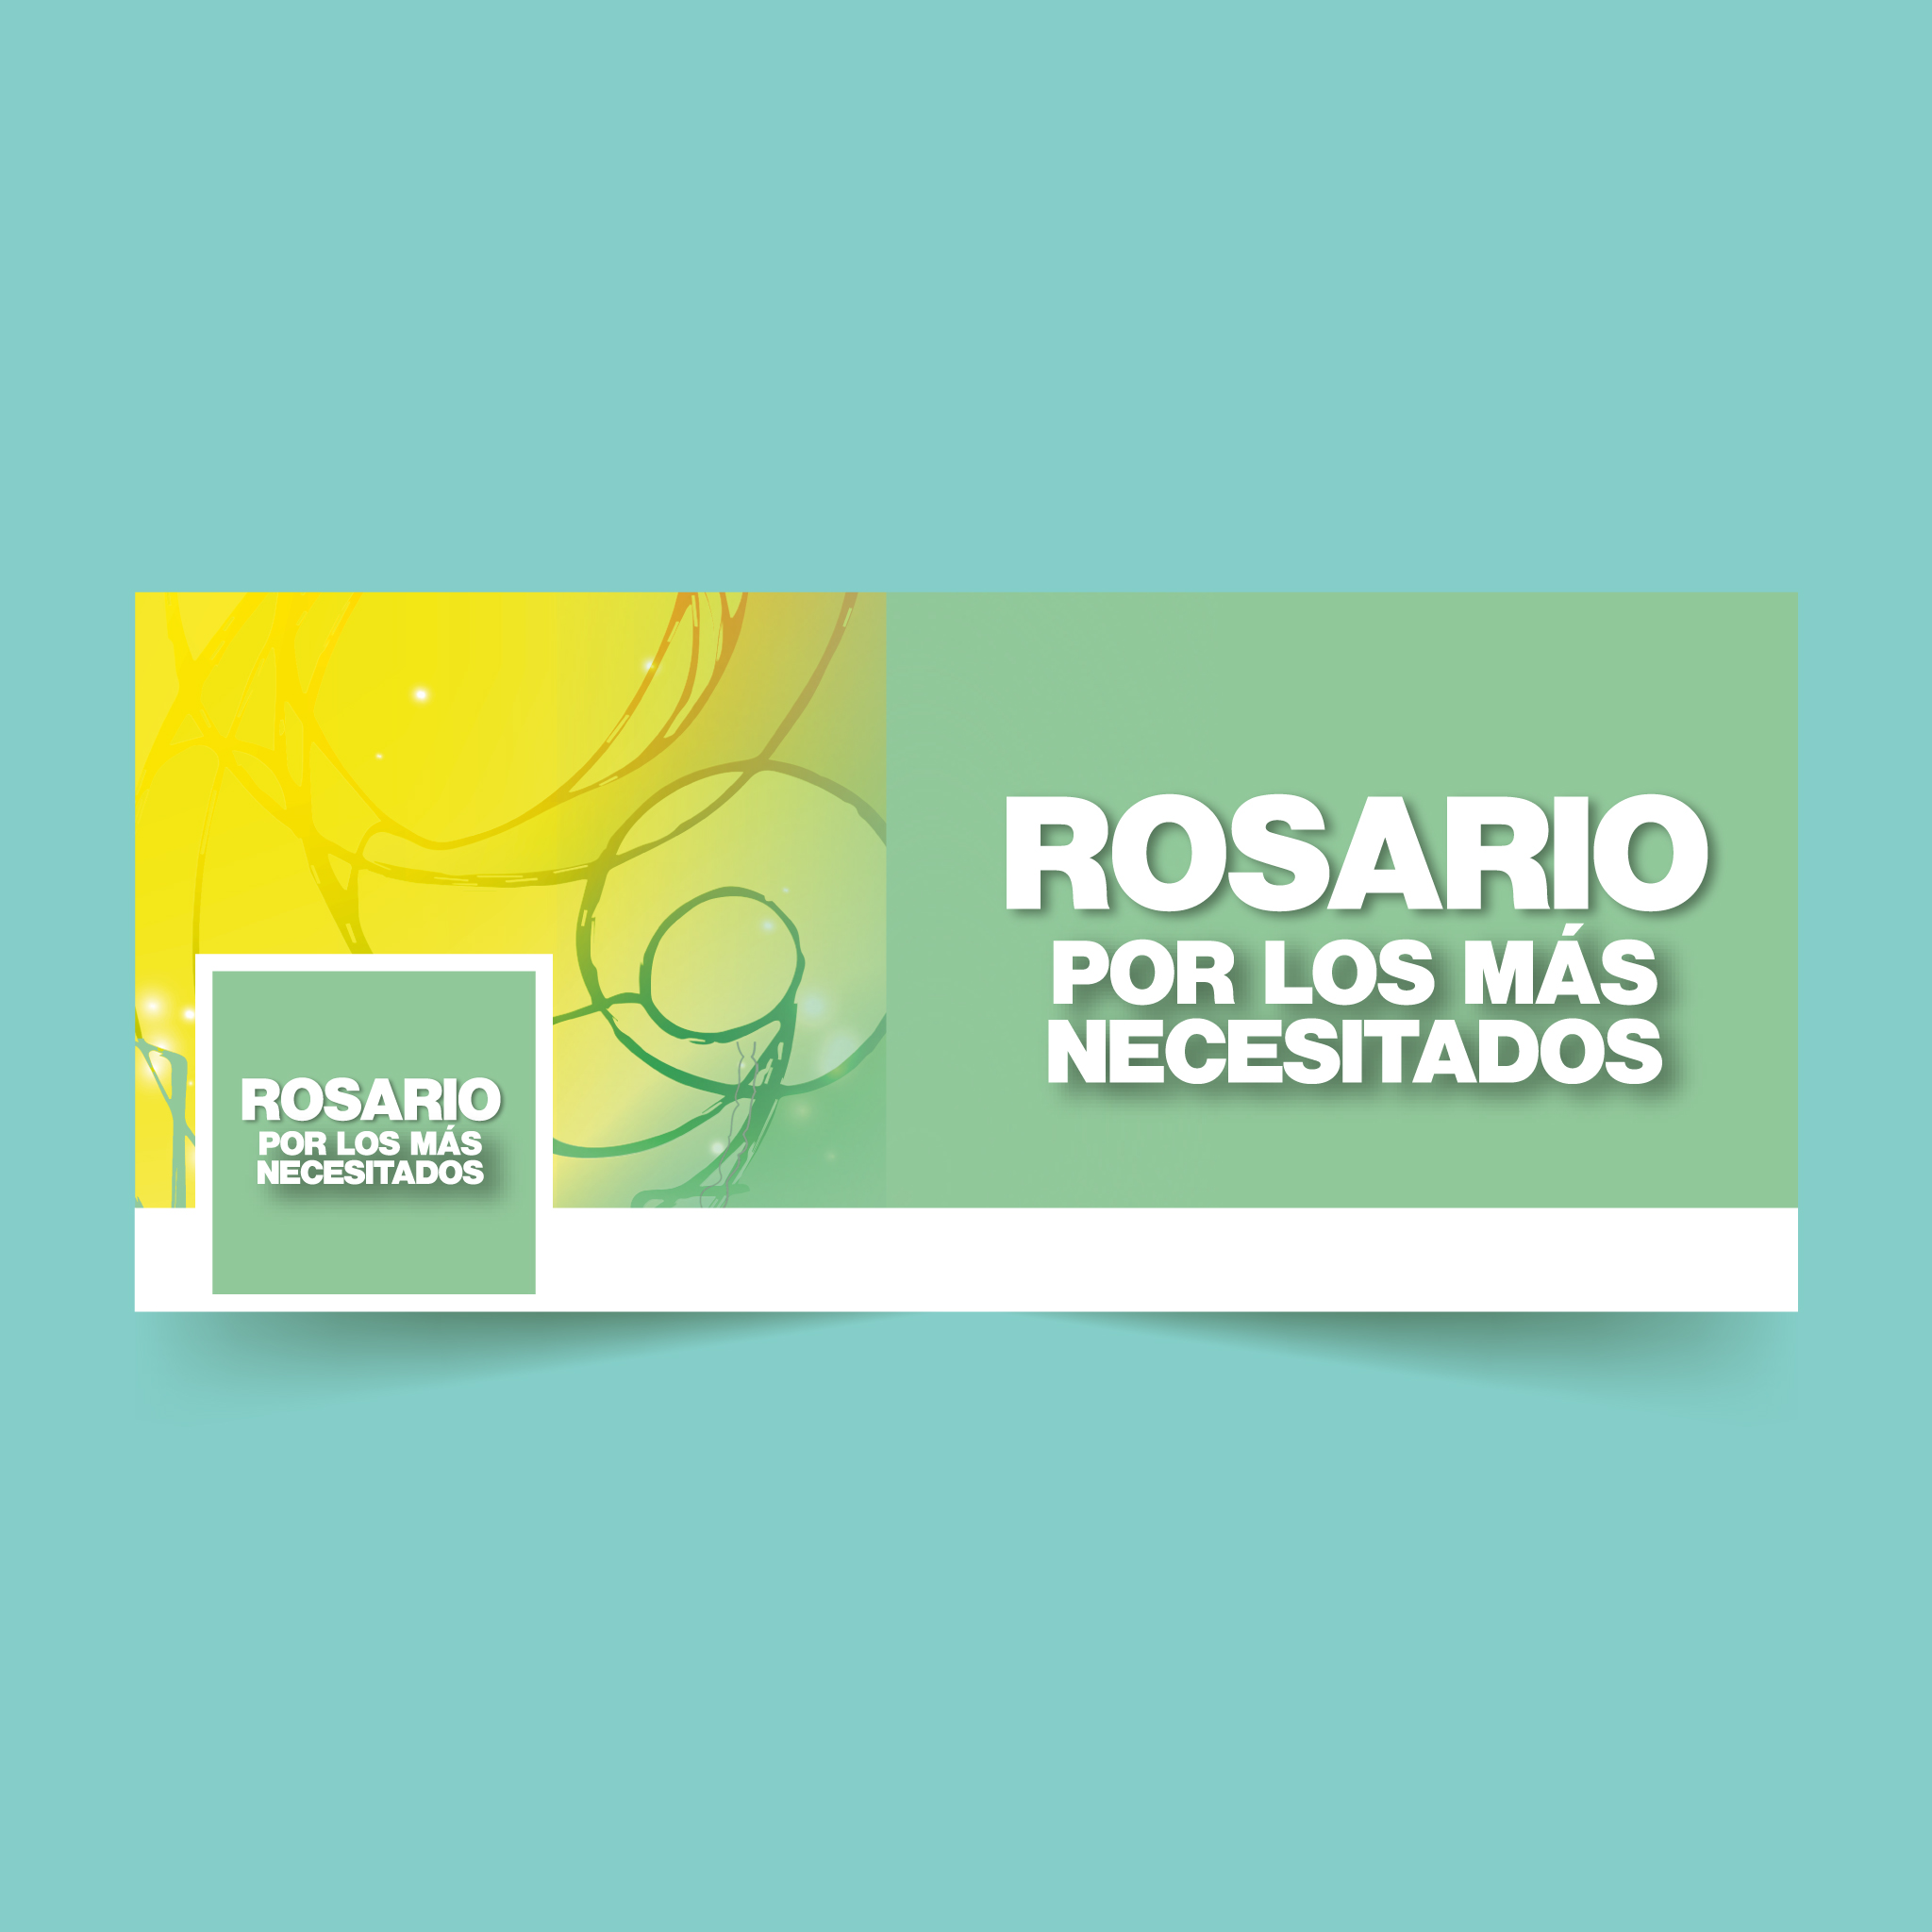 Diseño de banner para facebook_Rosario por lo más necesitados